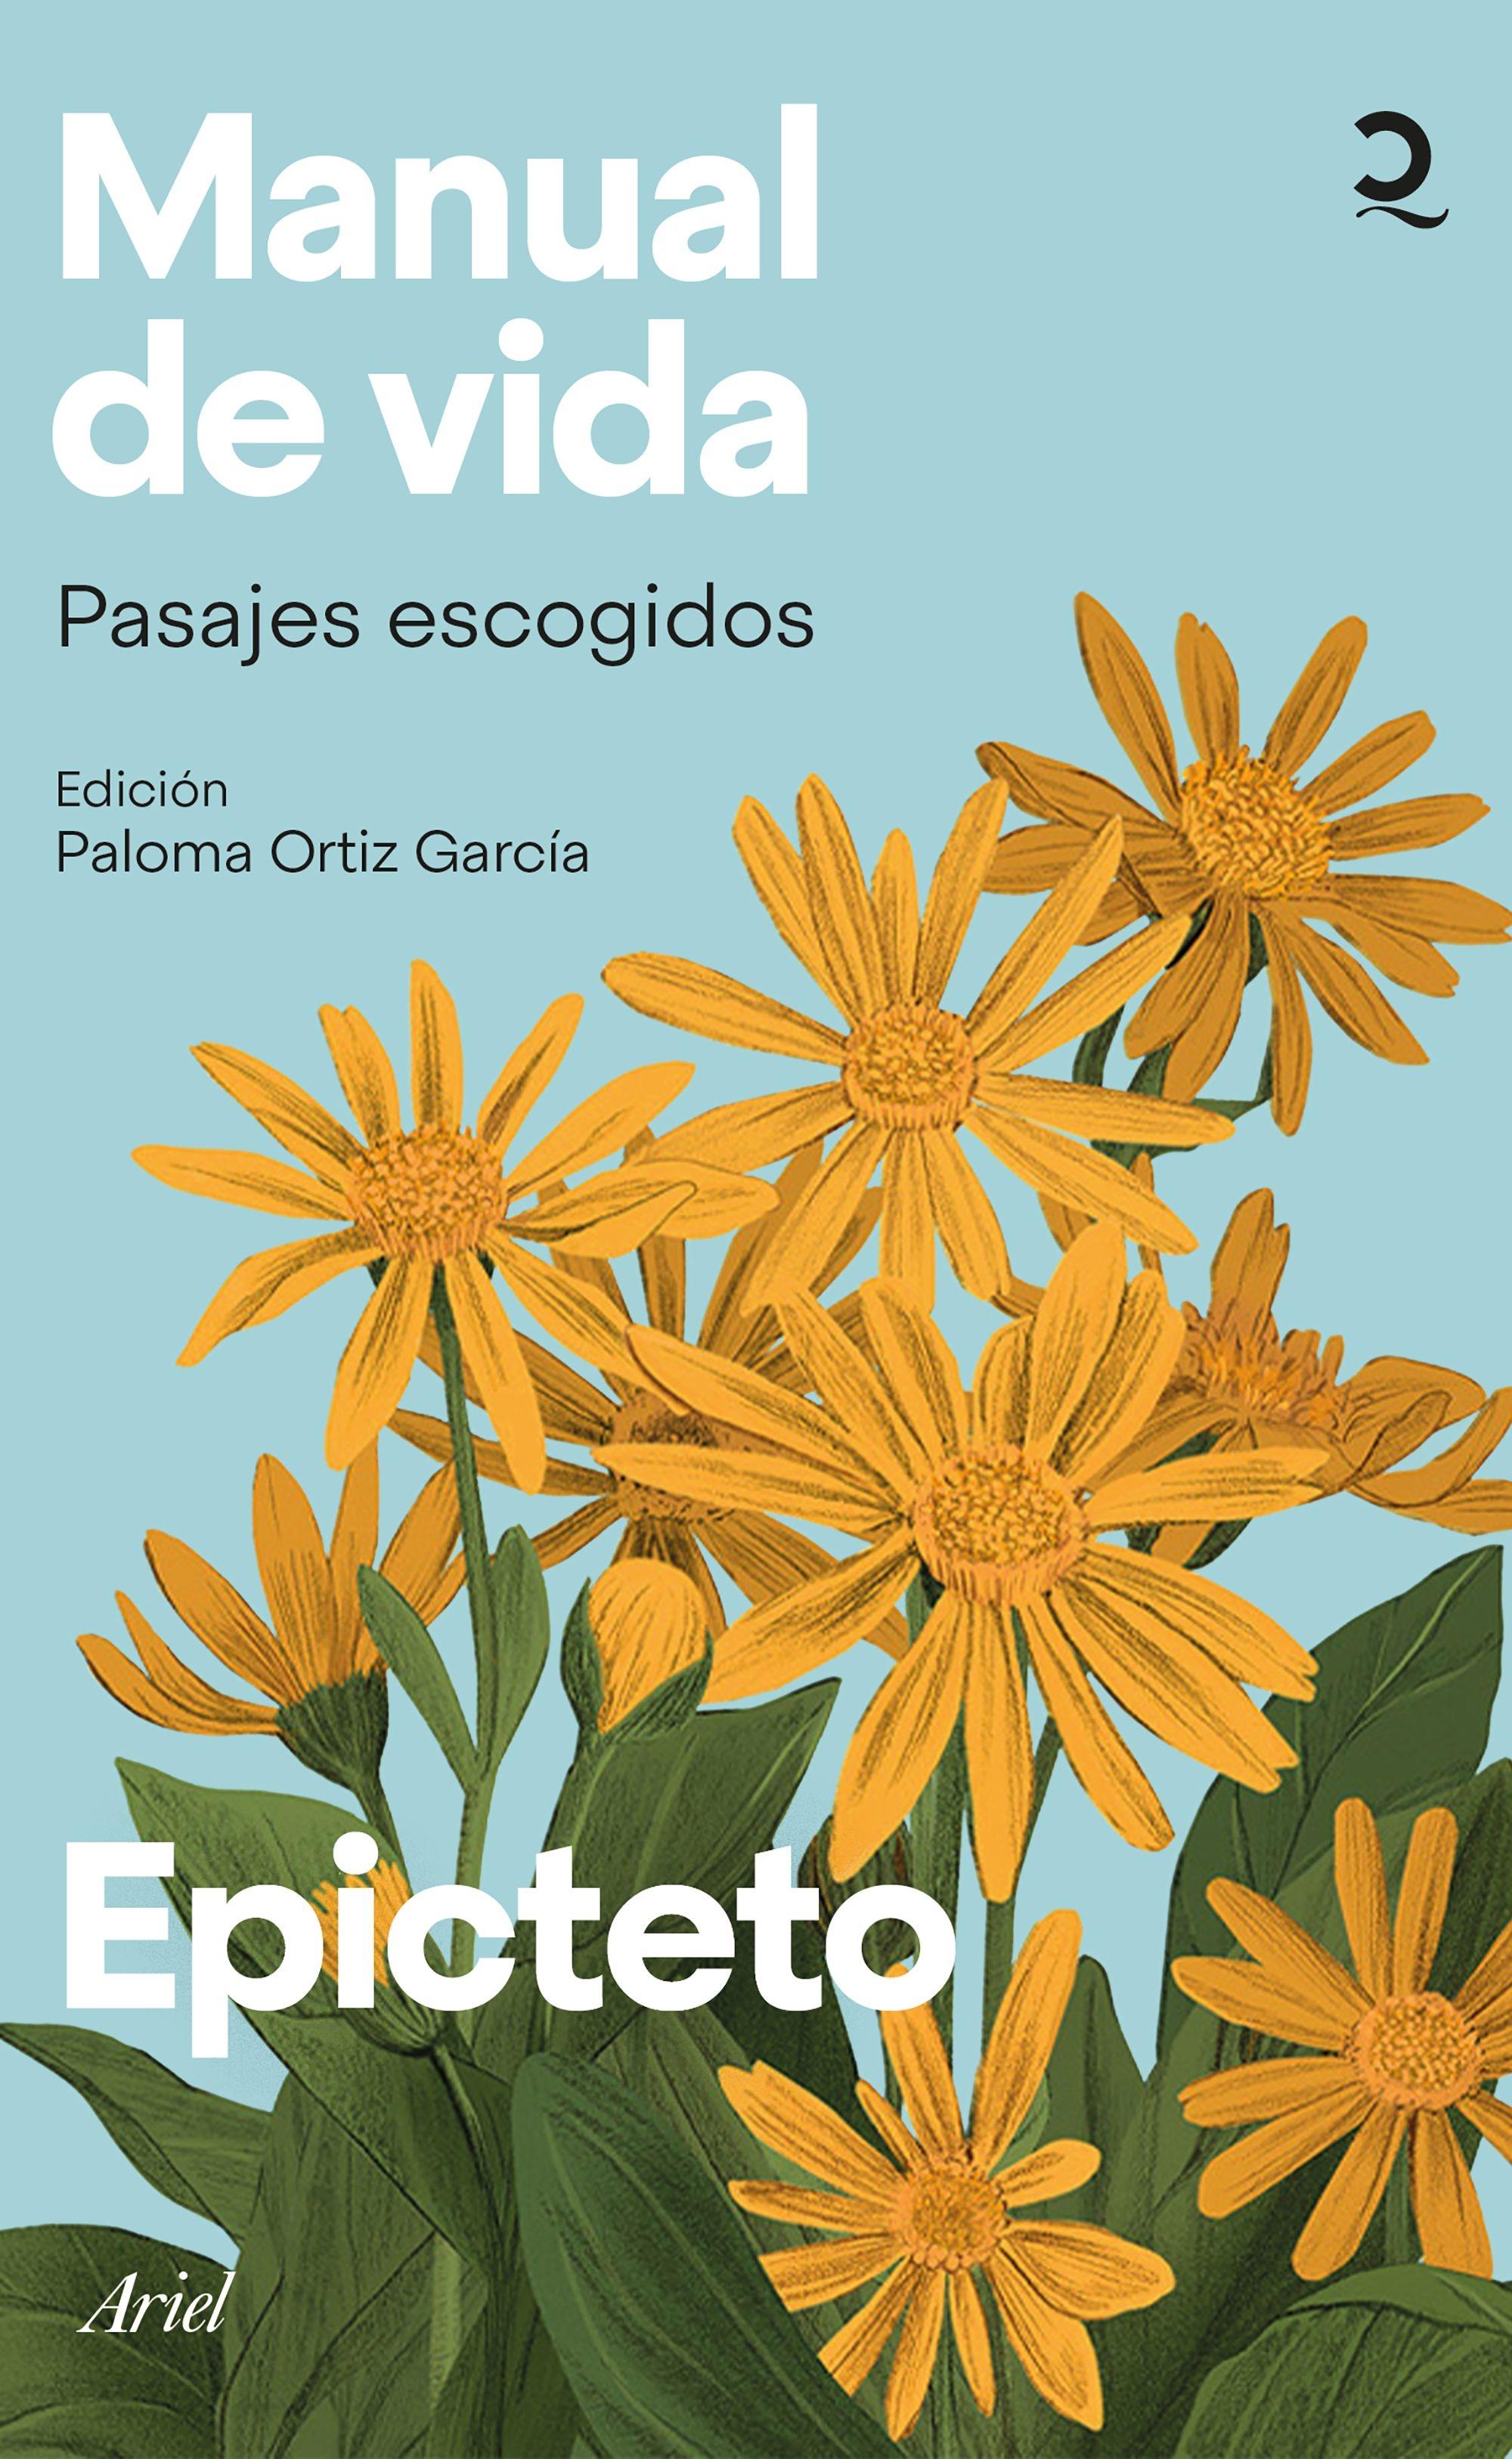 Manual de vida "Pasajes escogidos. Edición de Paloma Ortiz García"